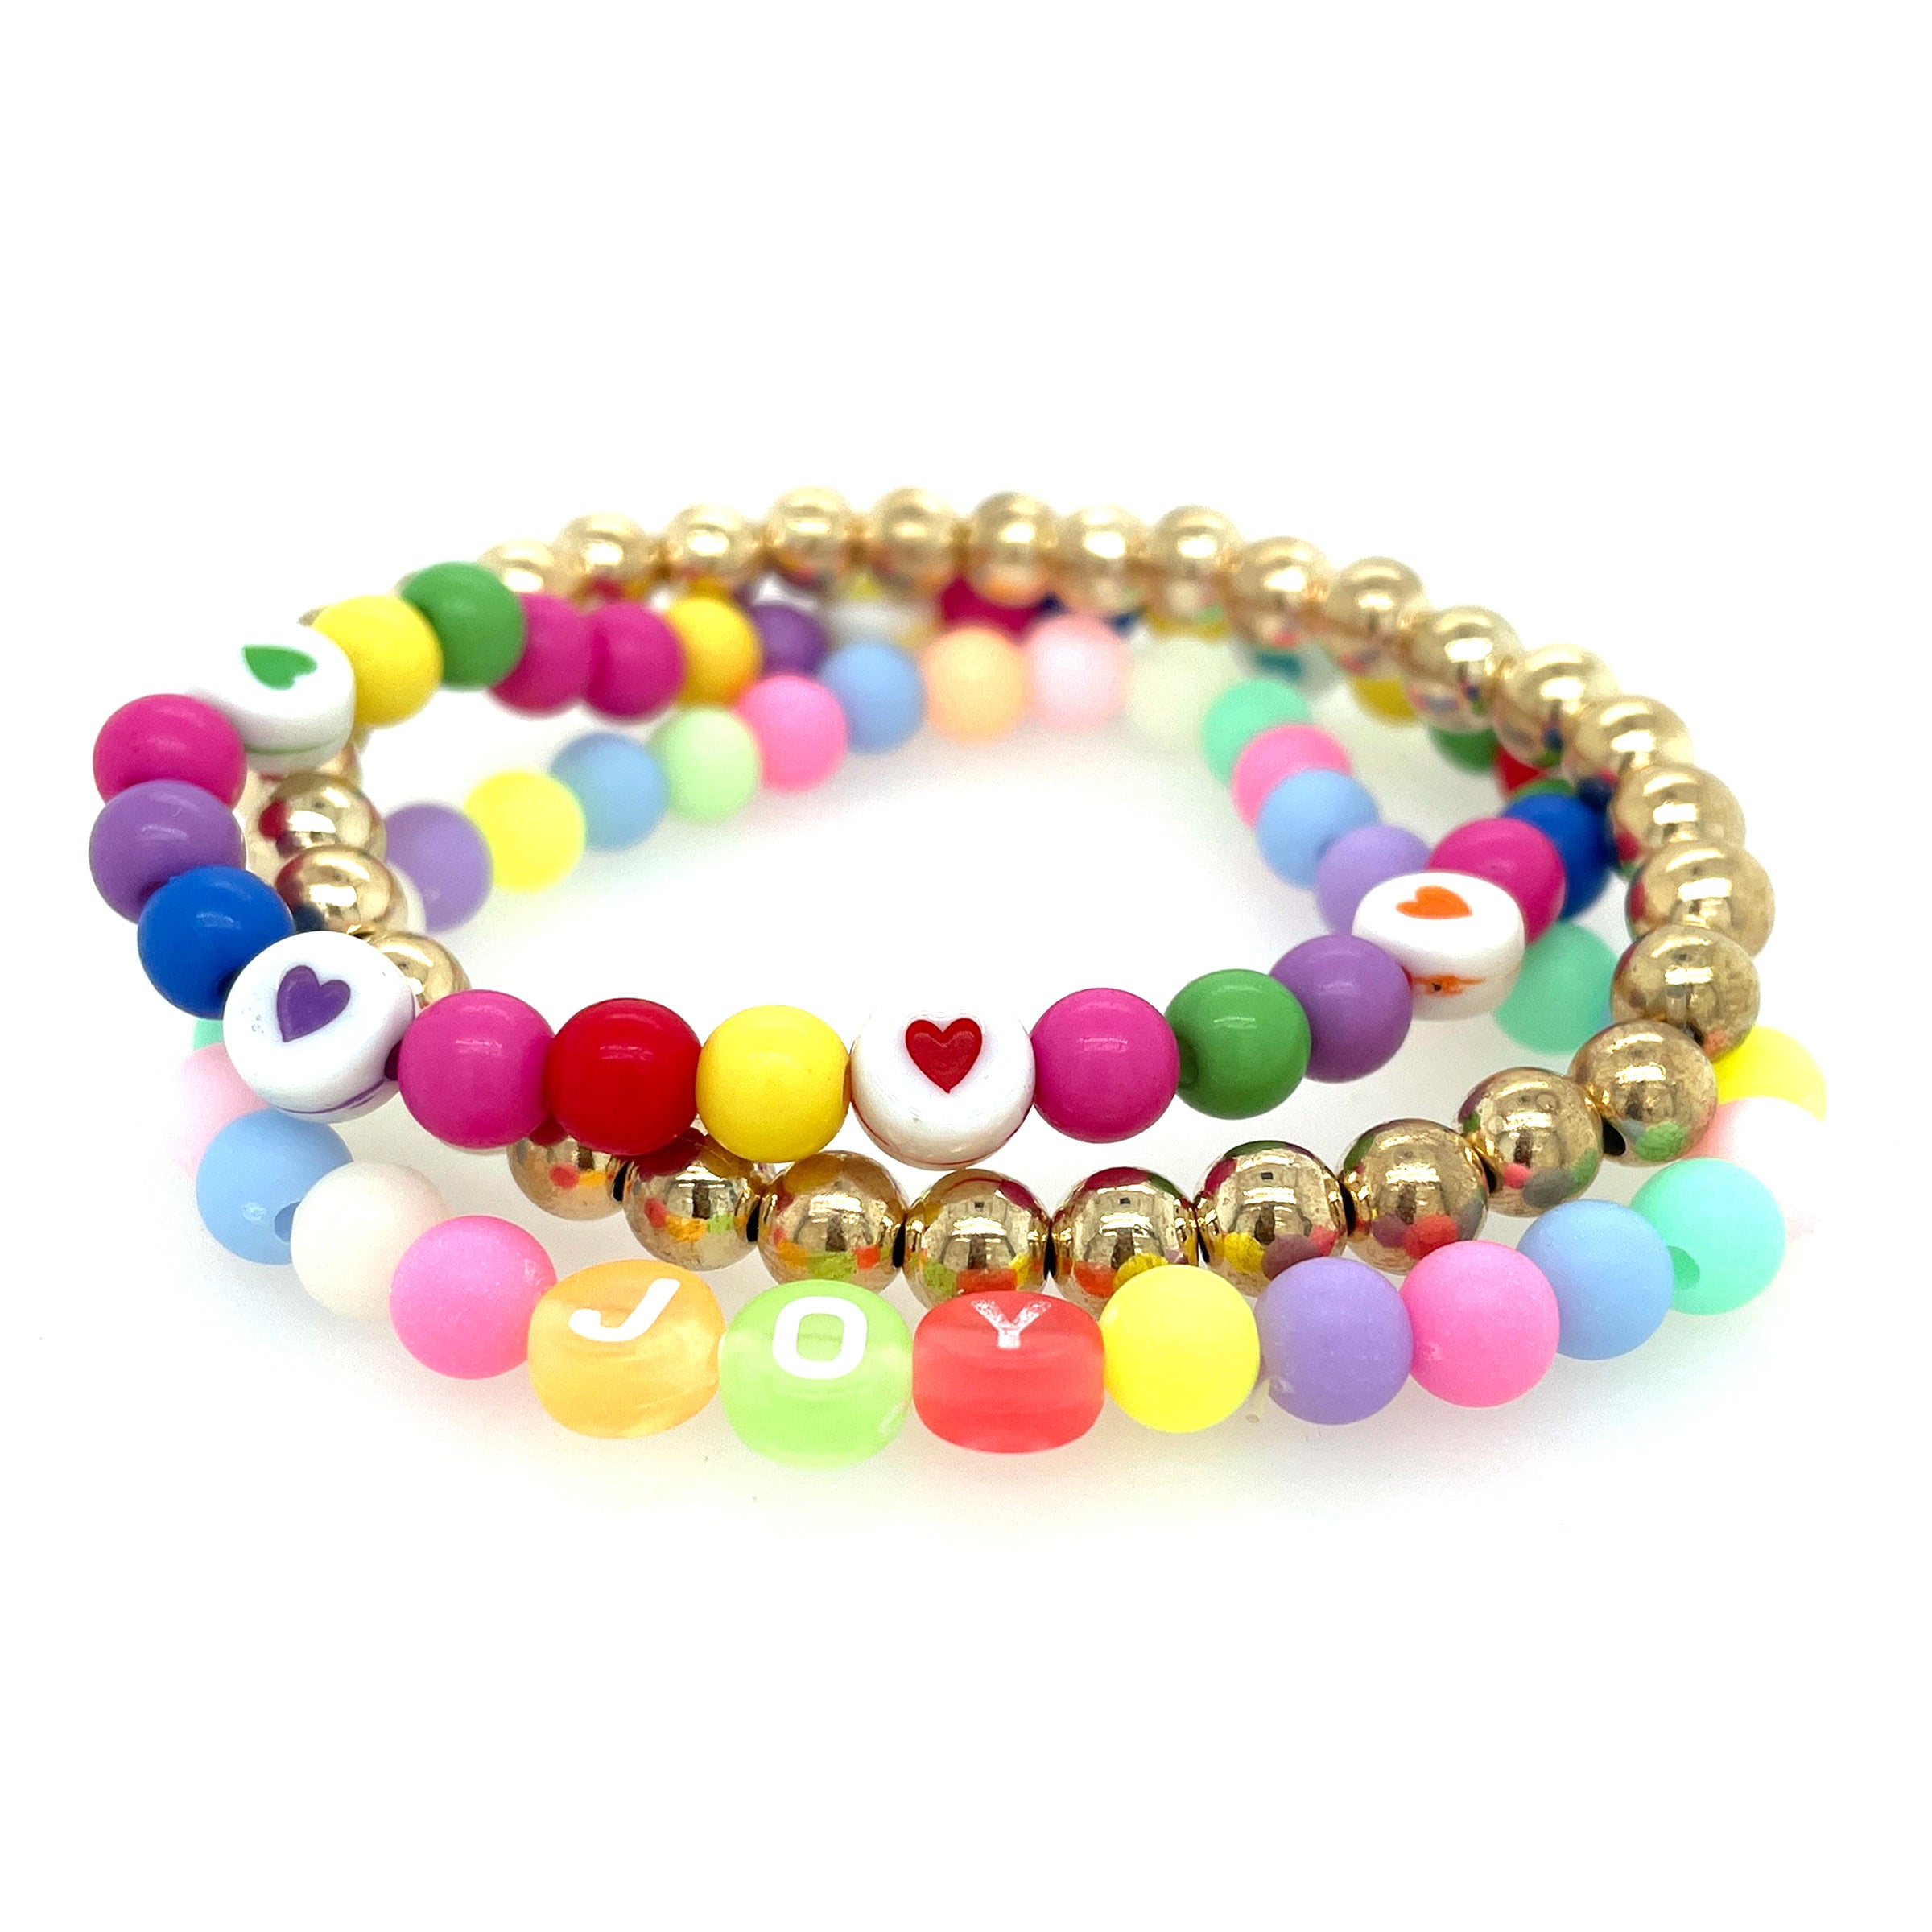 Blue Heart Strung Beads By Bead Landing™